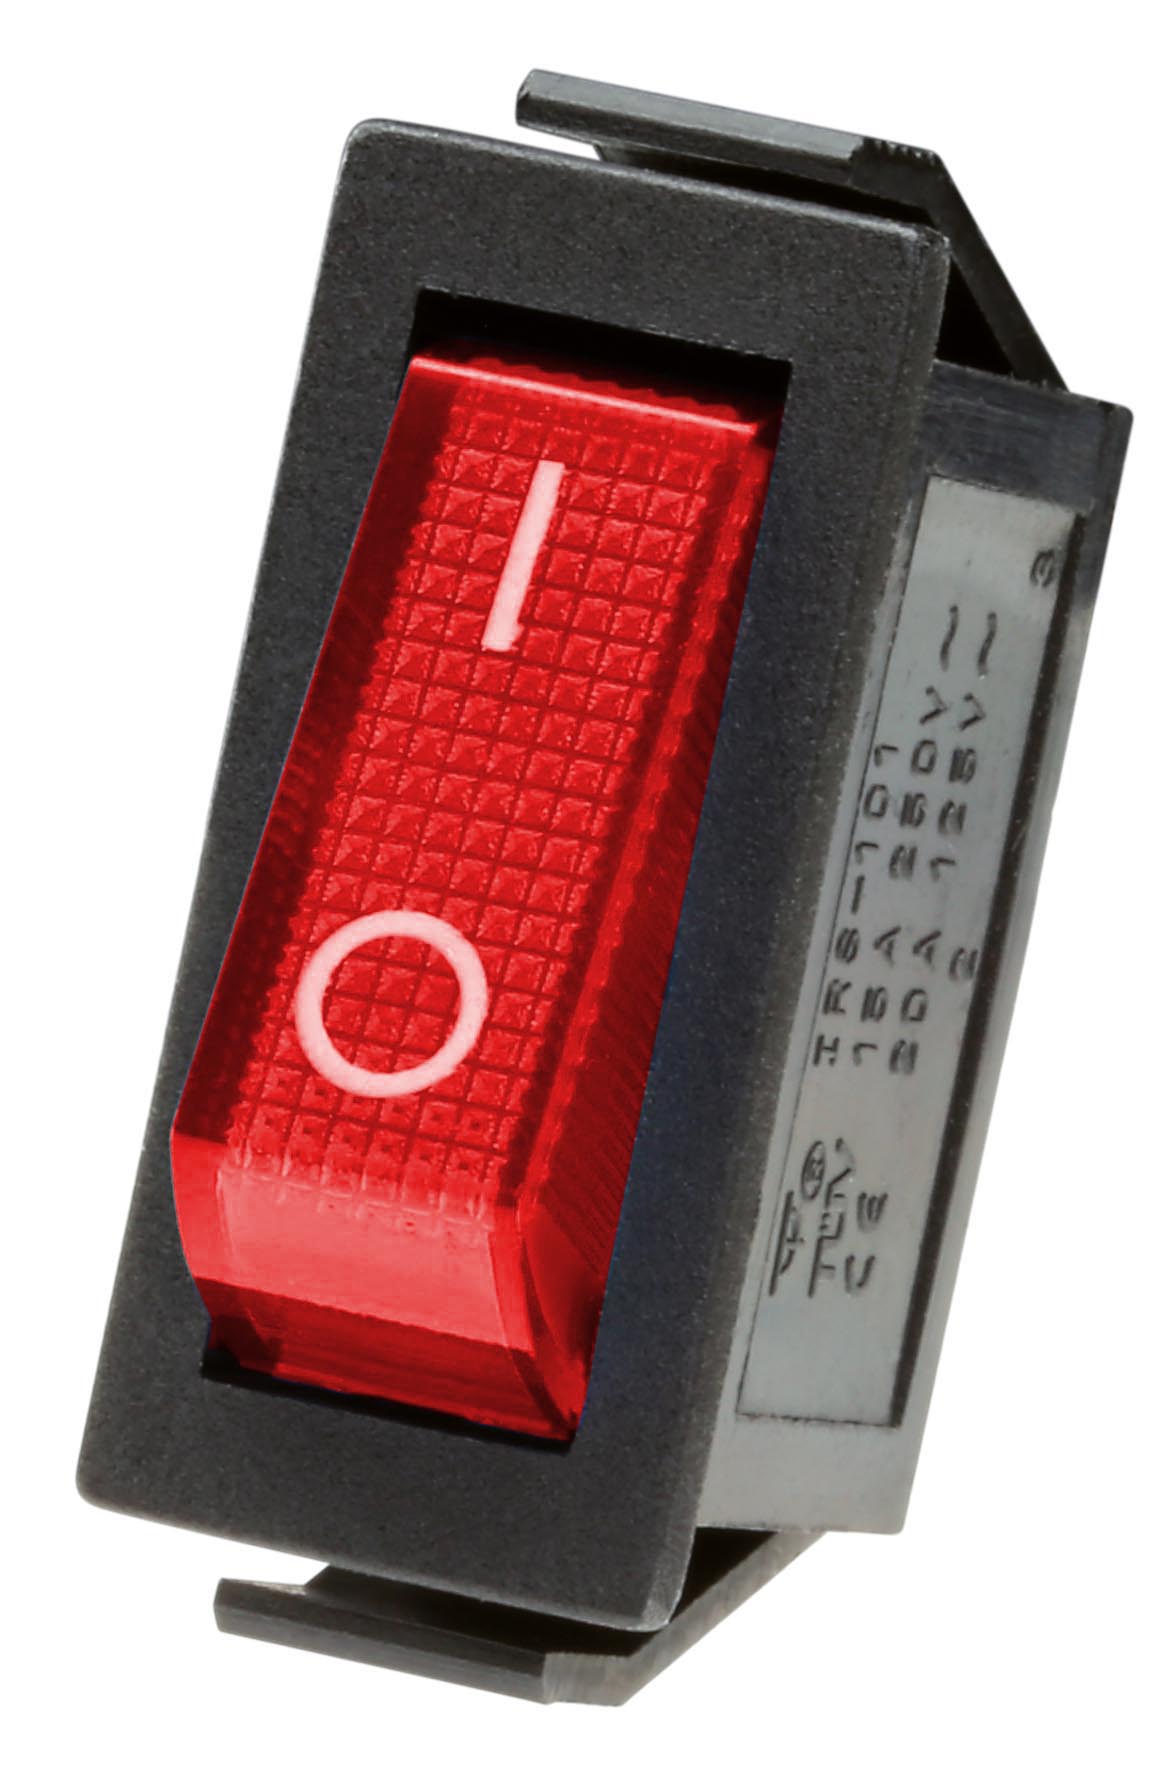 Die schmale rote Wippe des Schalters hat einen weißen O-I (An/Aus) Aufdruck.